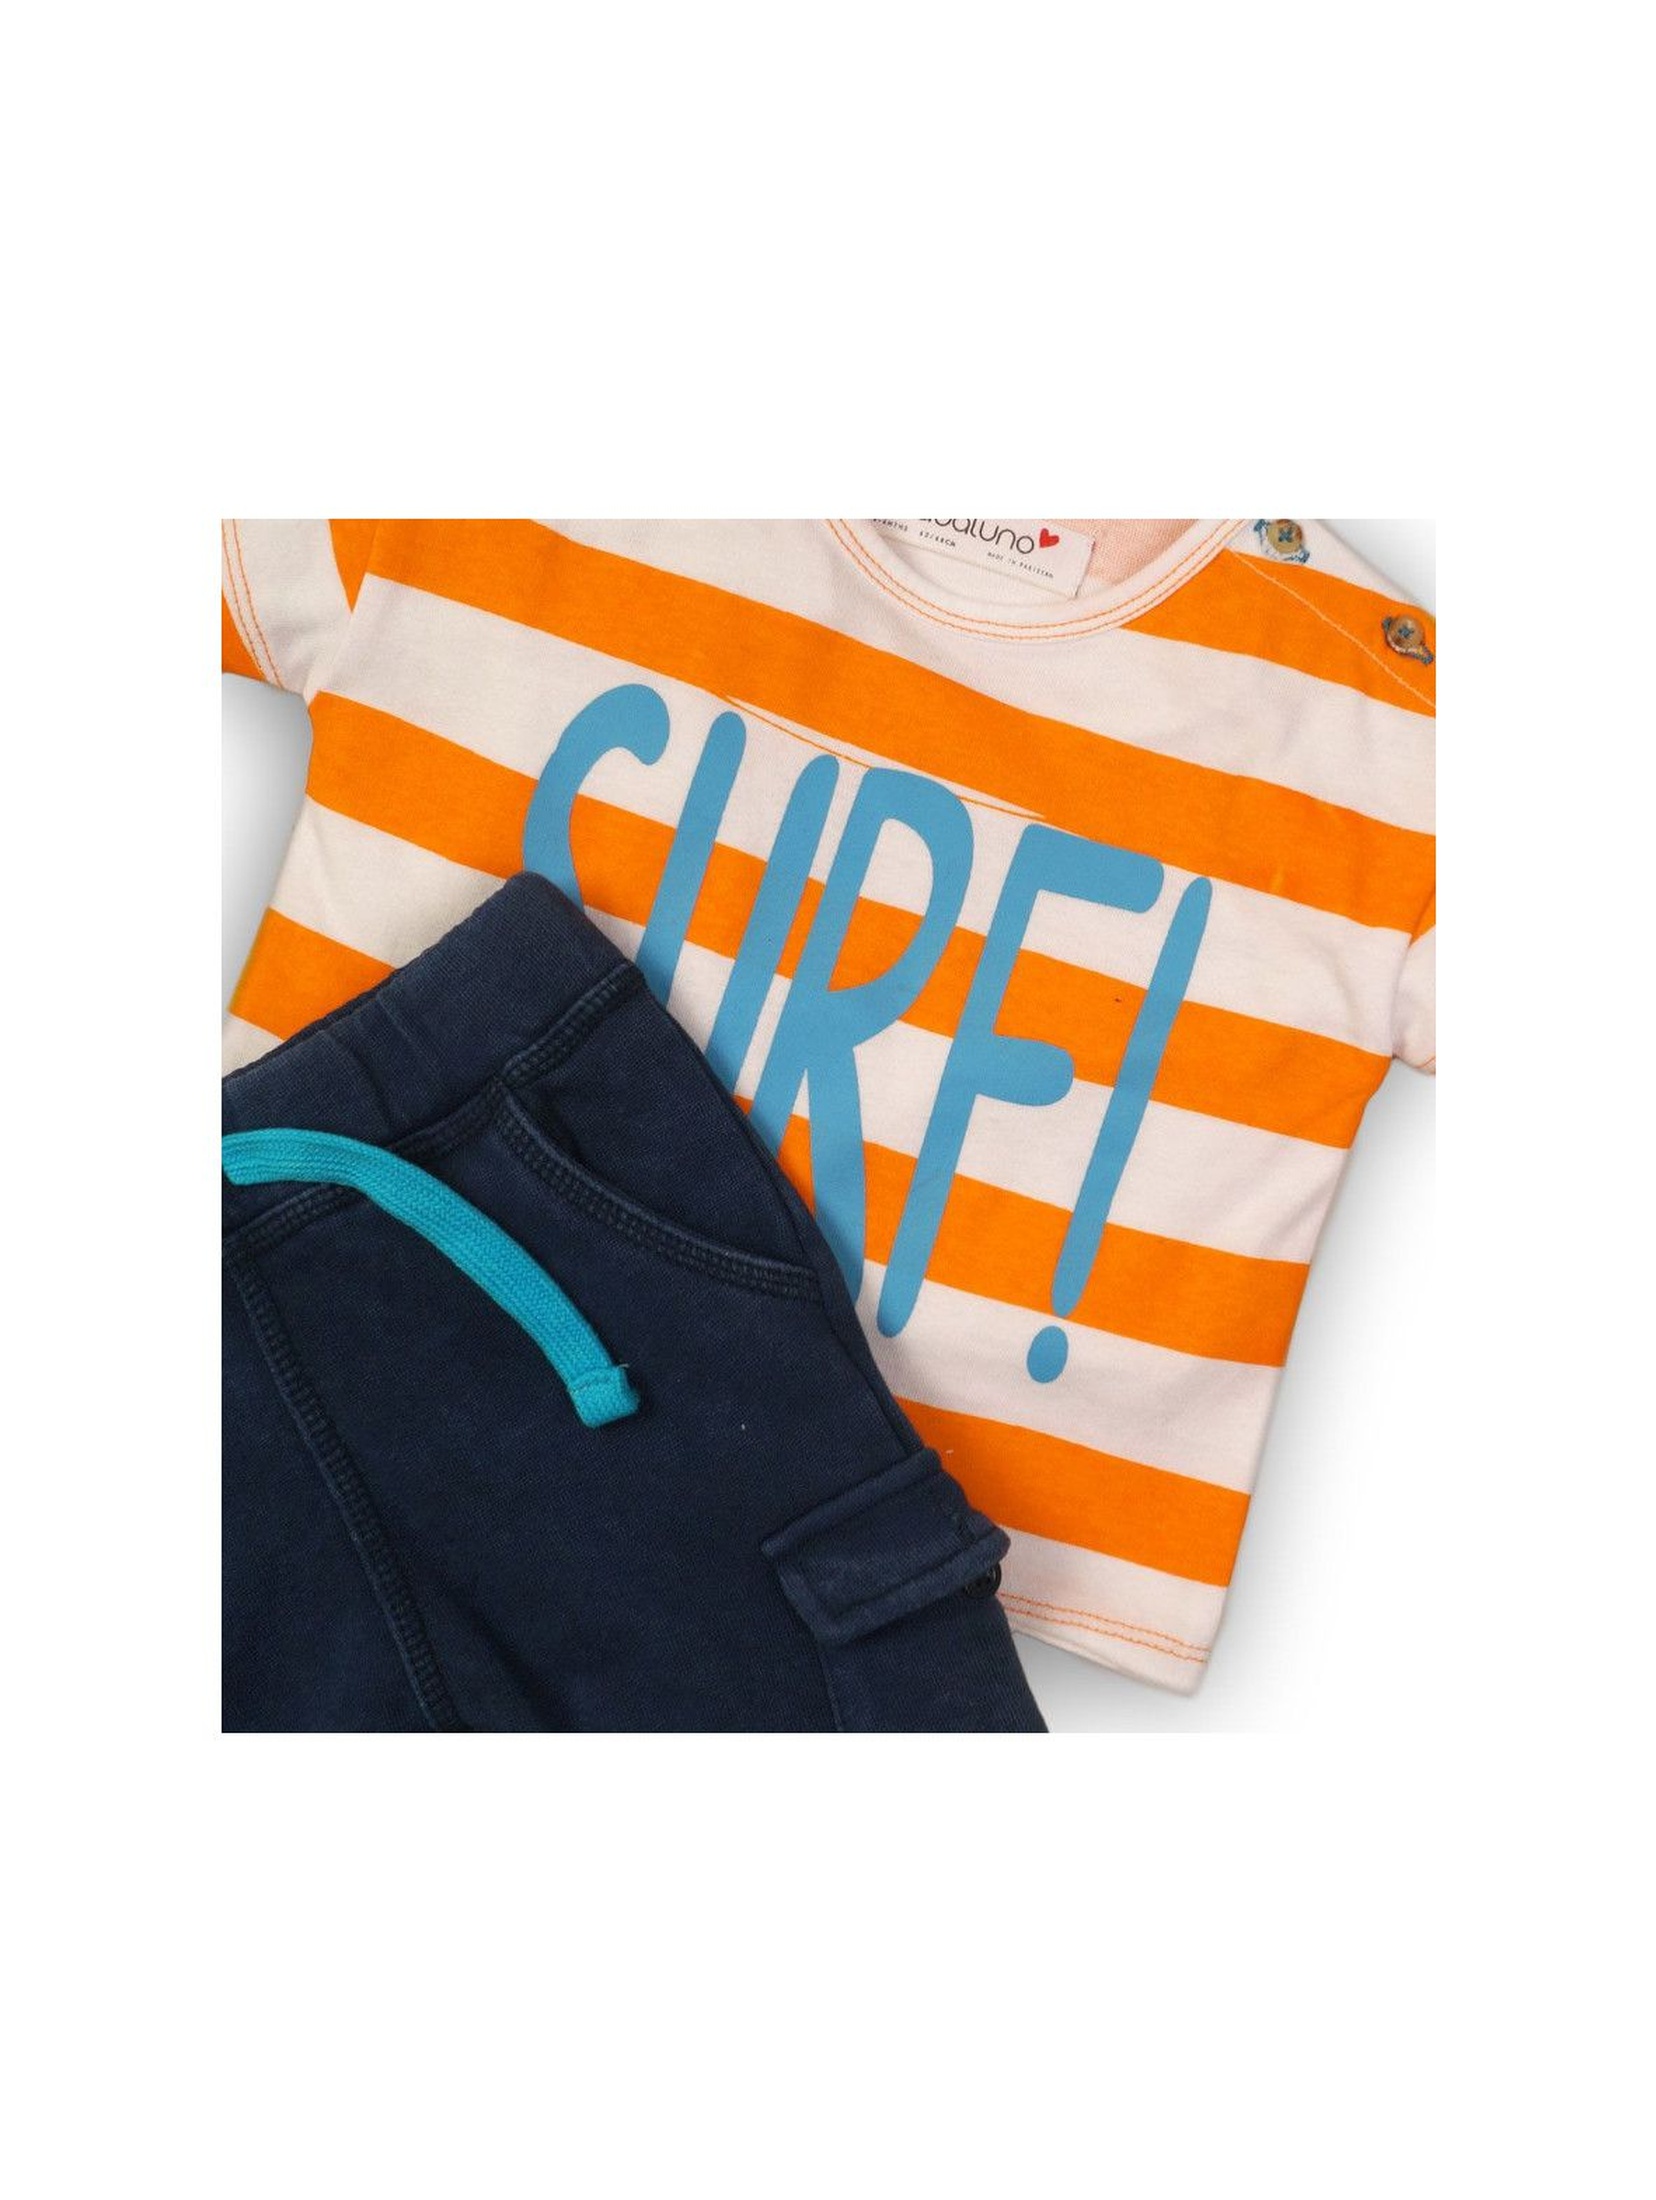 Komplet niemowlęcy t-shirt i długie spodnie Surf